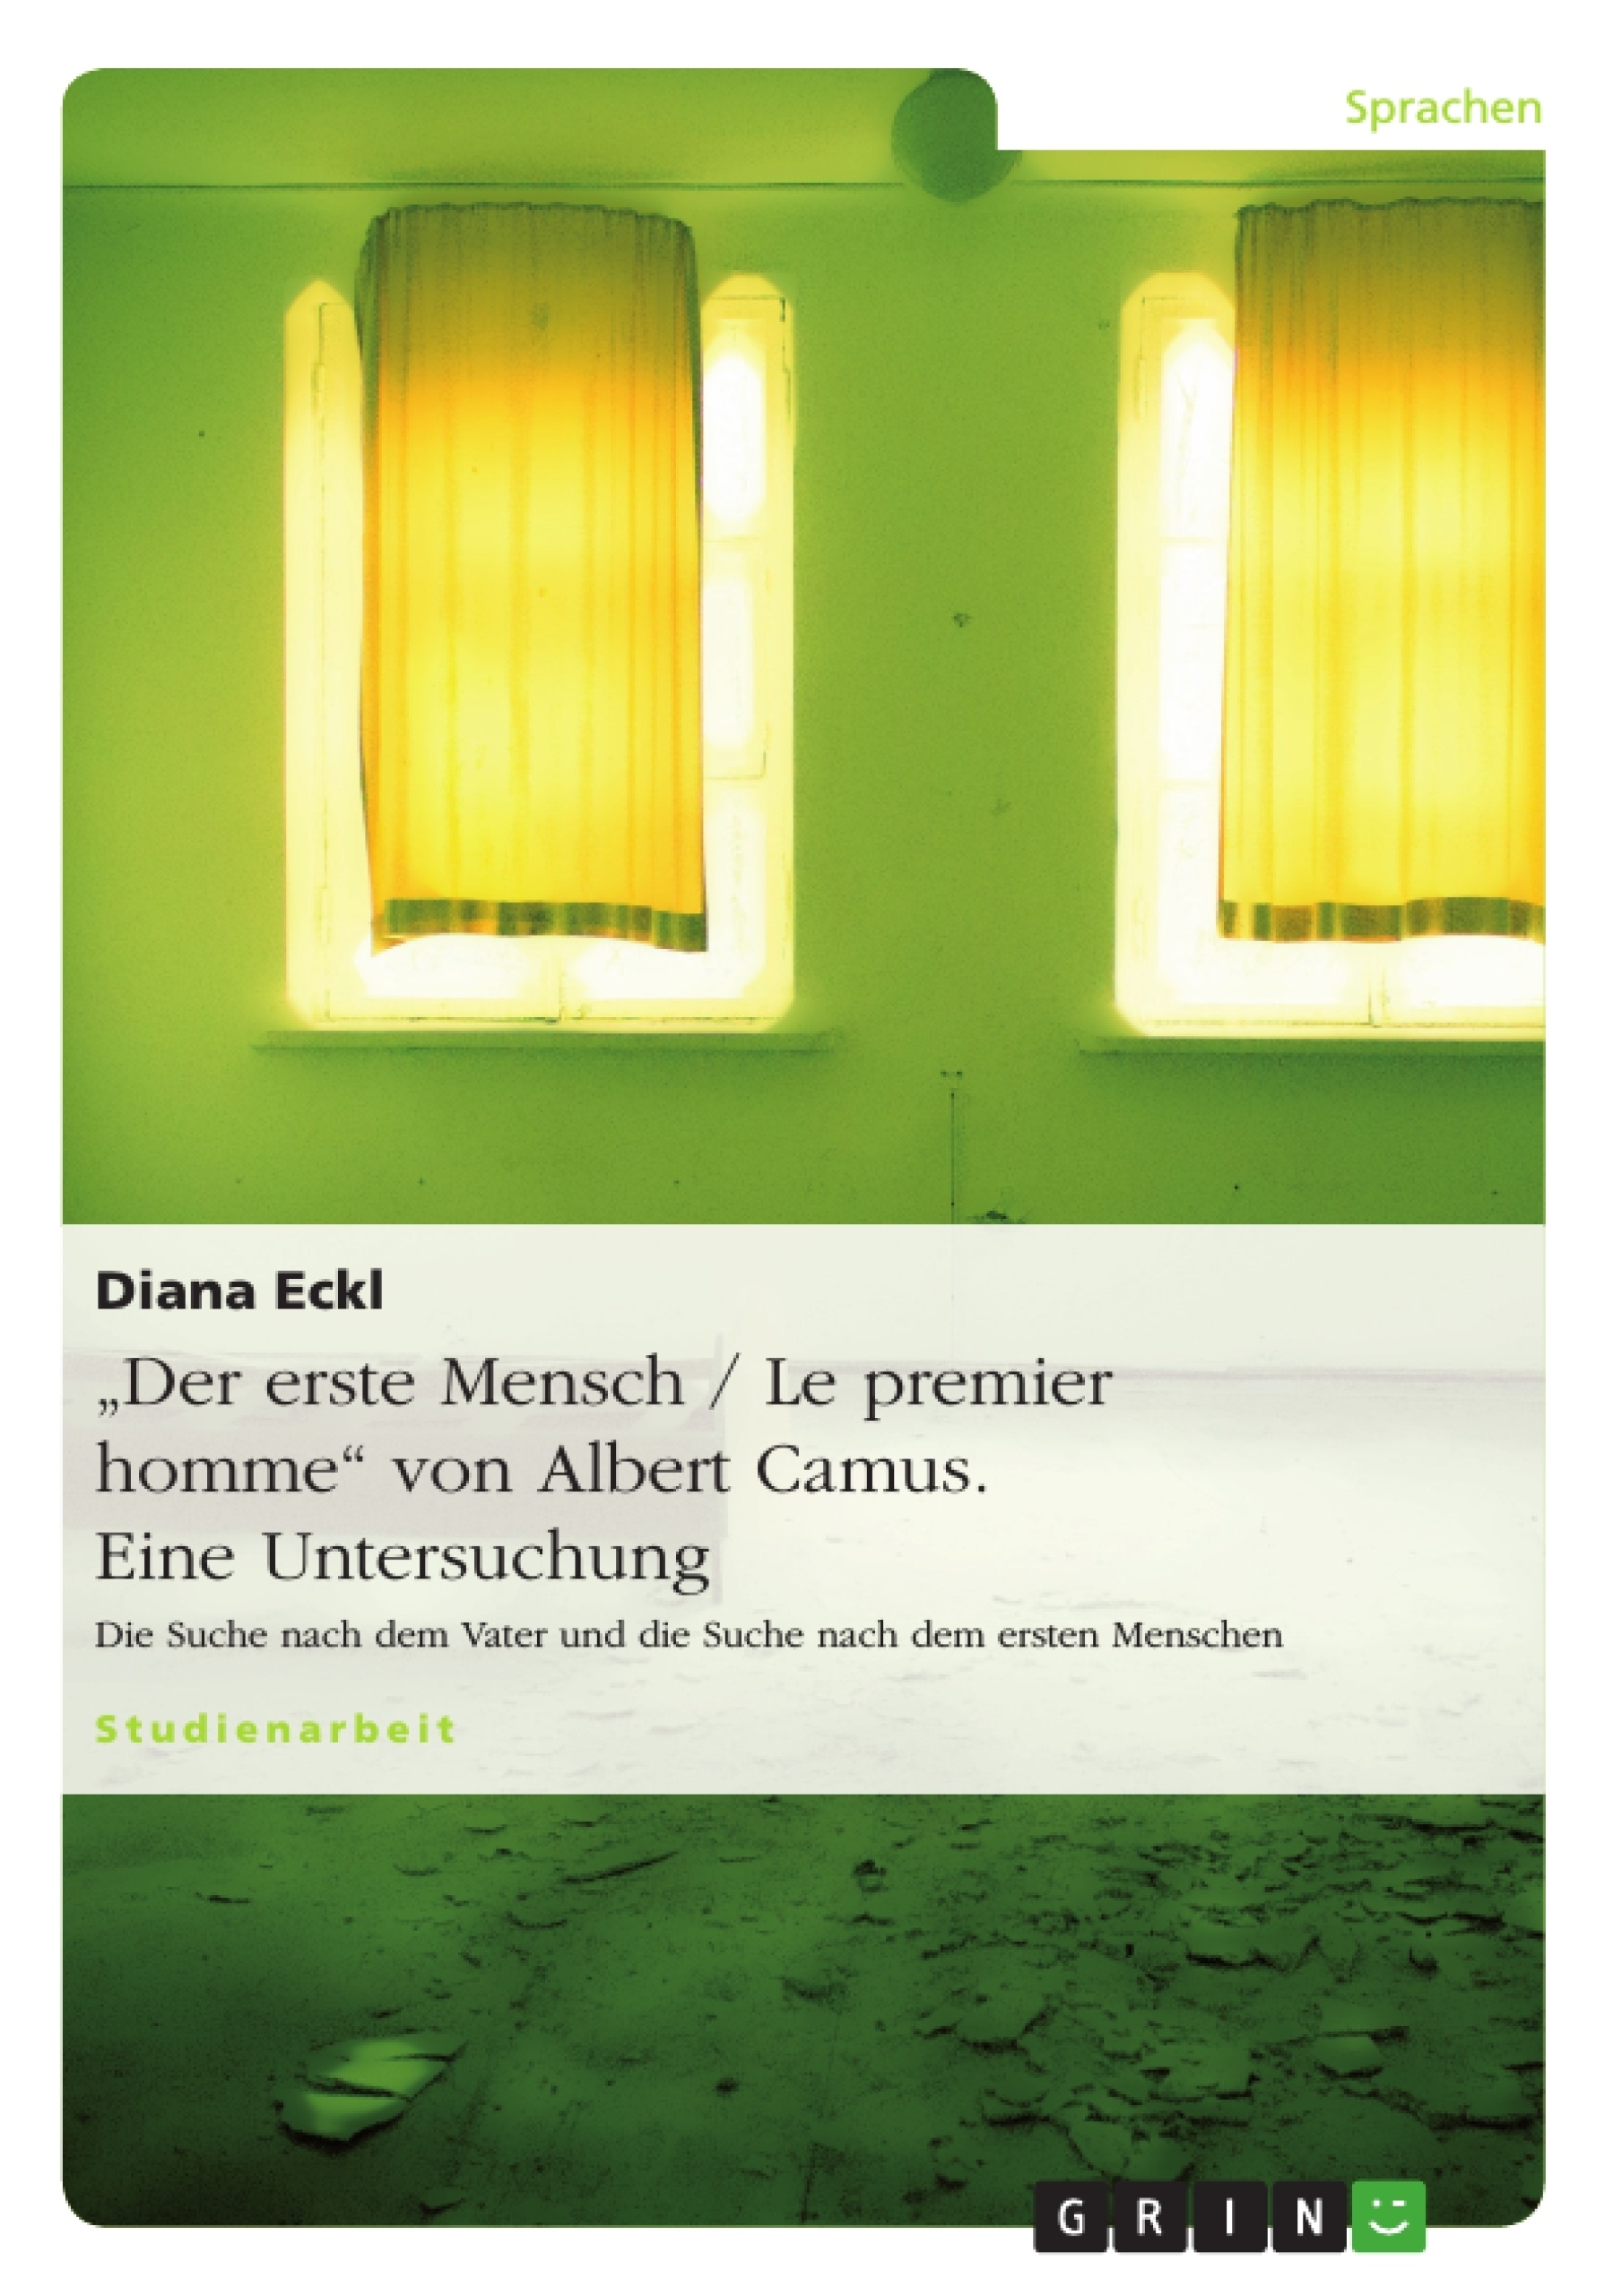 Title: "Der erste Mensch / Le premier homme" von Albert Camus. Eine Untersuchung